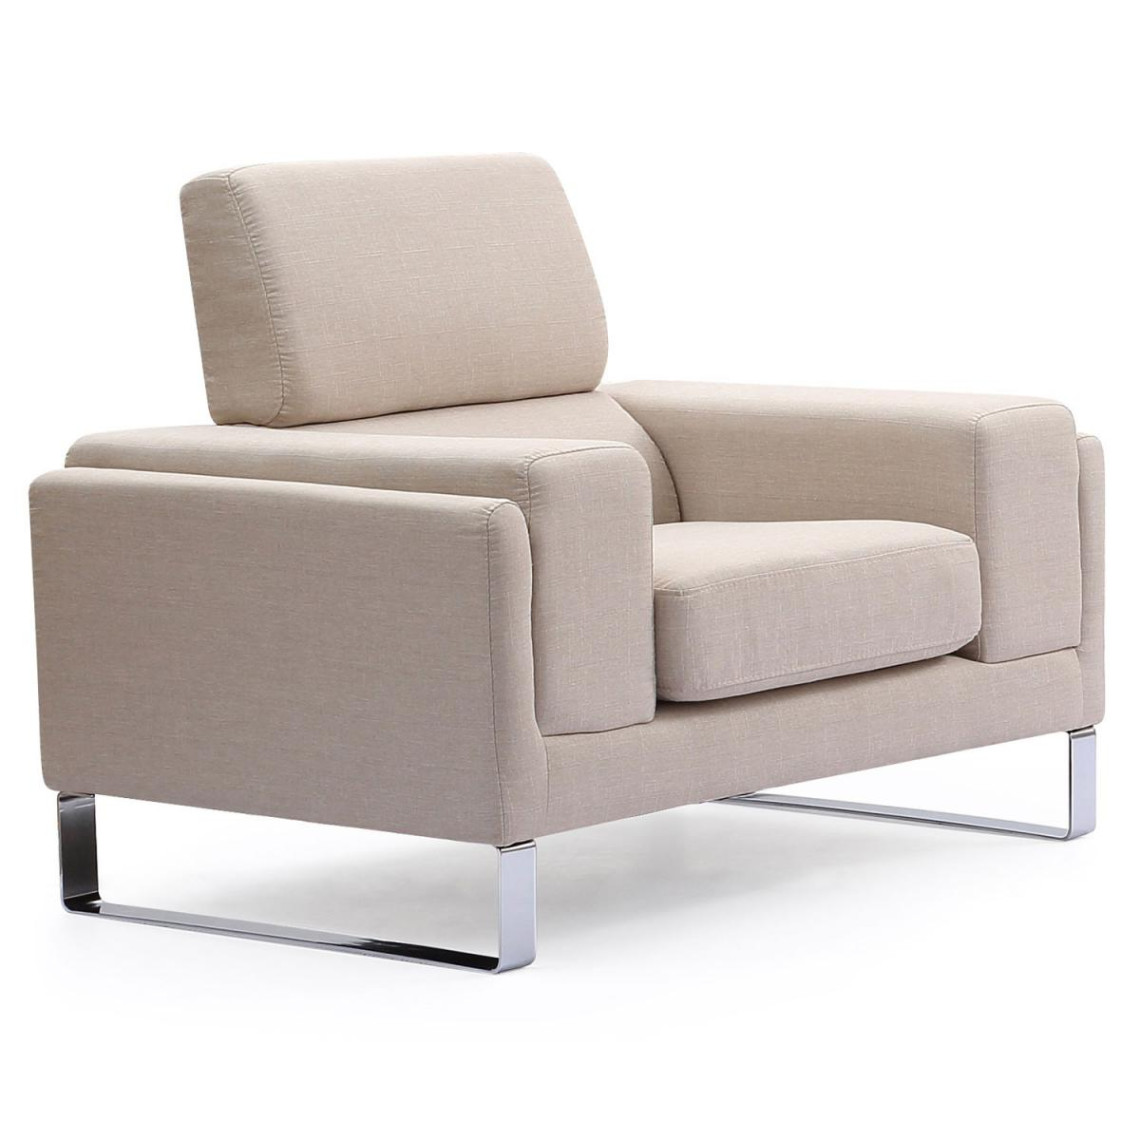 Design Coussin mobilier Tissu Siège Banque Canapé Beige Chambre enfant deco fauteuil